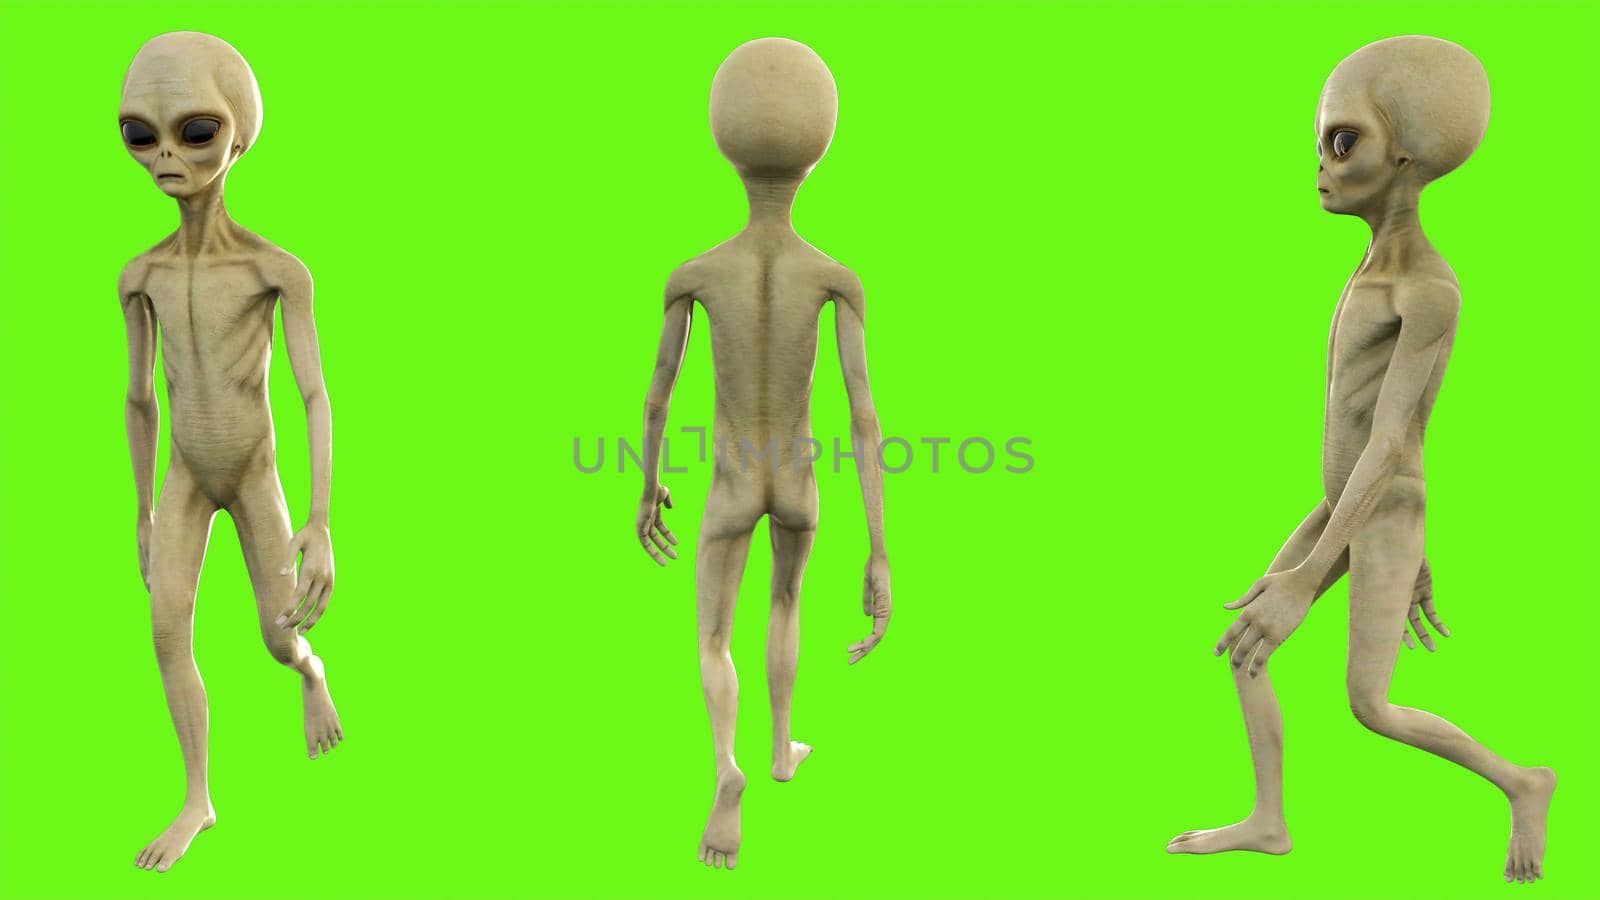 Alien walks on green screen. 3D rendering by designprojects